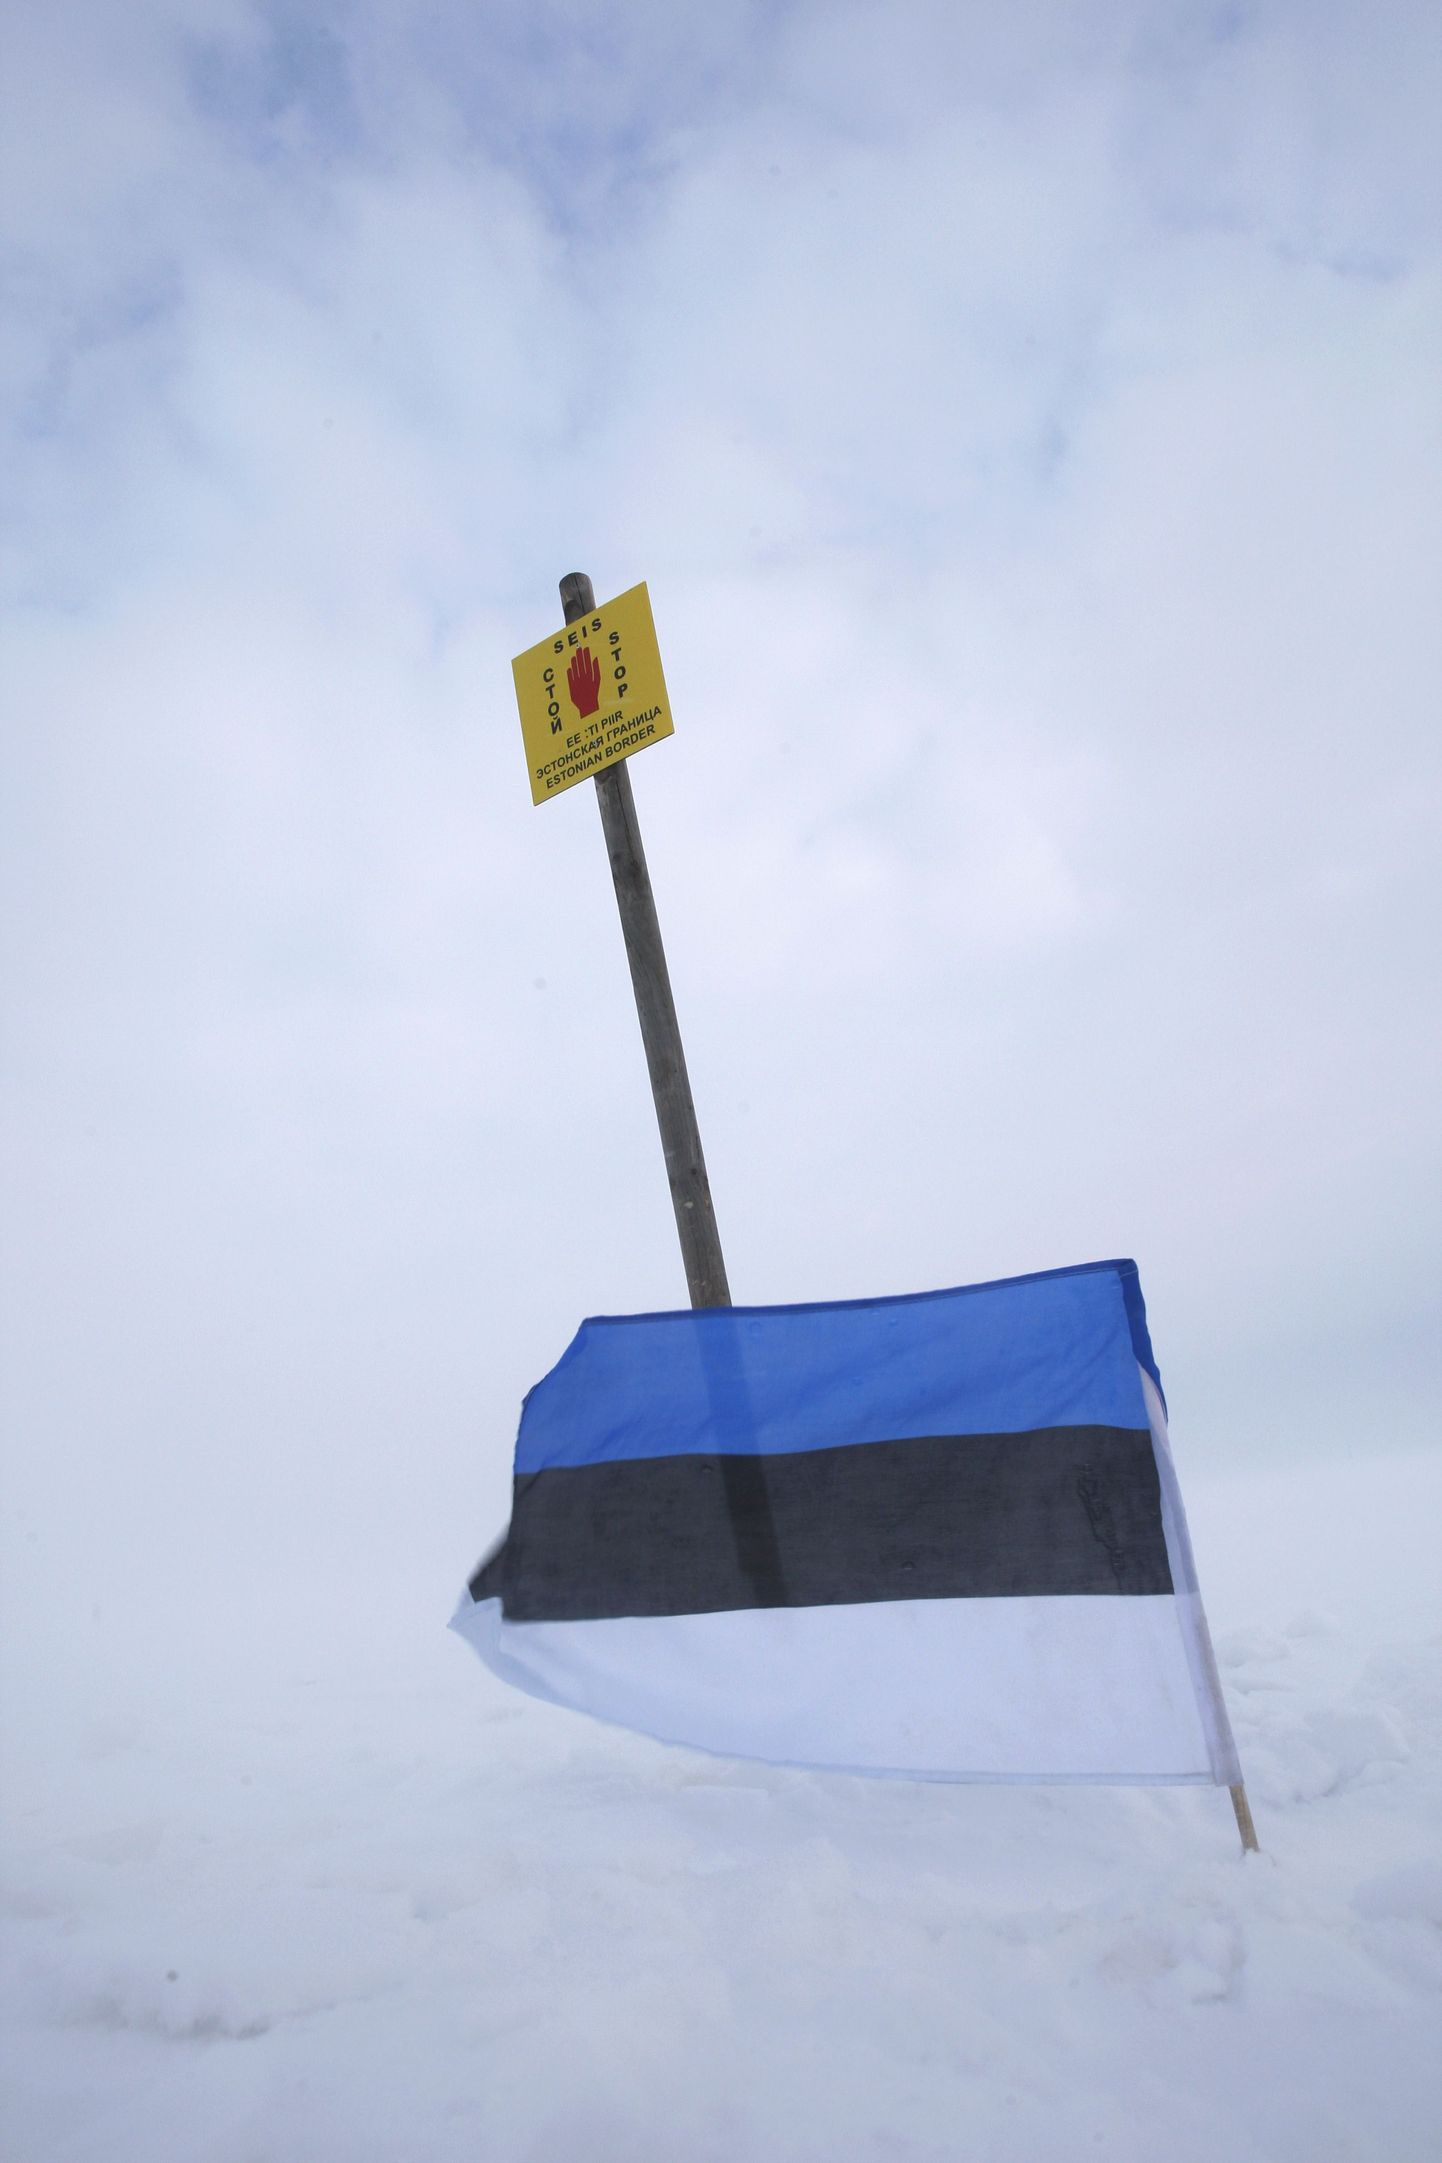 Riigipiiri tähistav lipp talvisel Peipsi järvel. Pilt on illustratiivne.